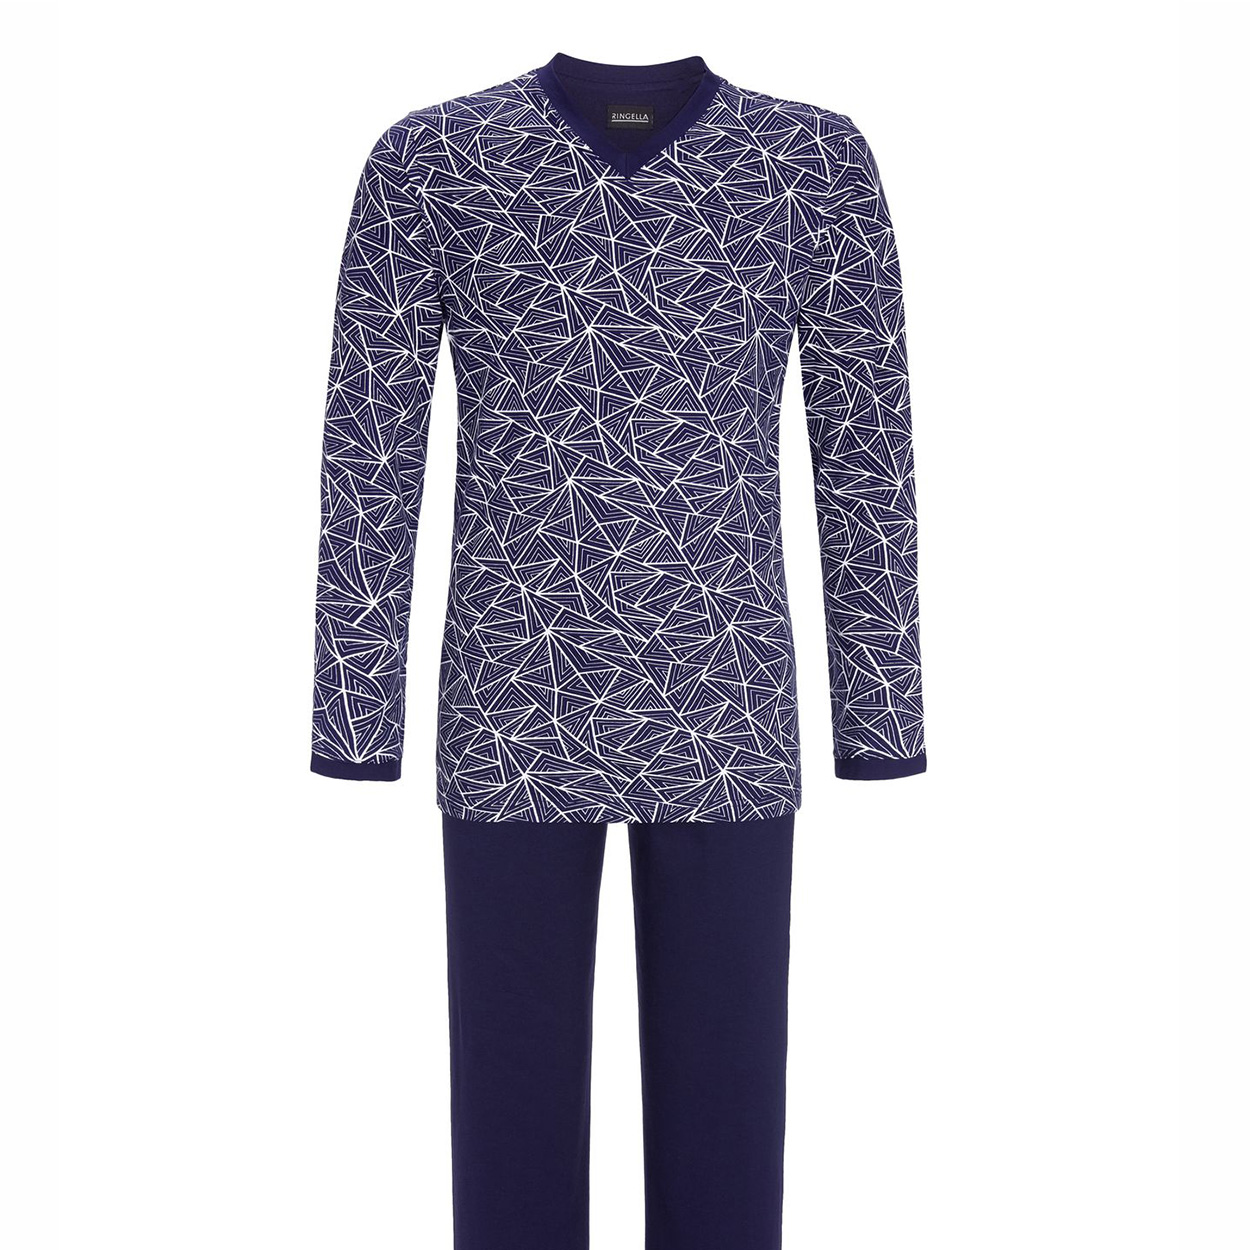 Pyjama long Ringella en coton : tee-shirt manches longues col V bleu marine à motifs graphique et pa